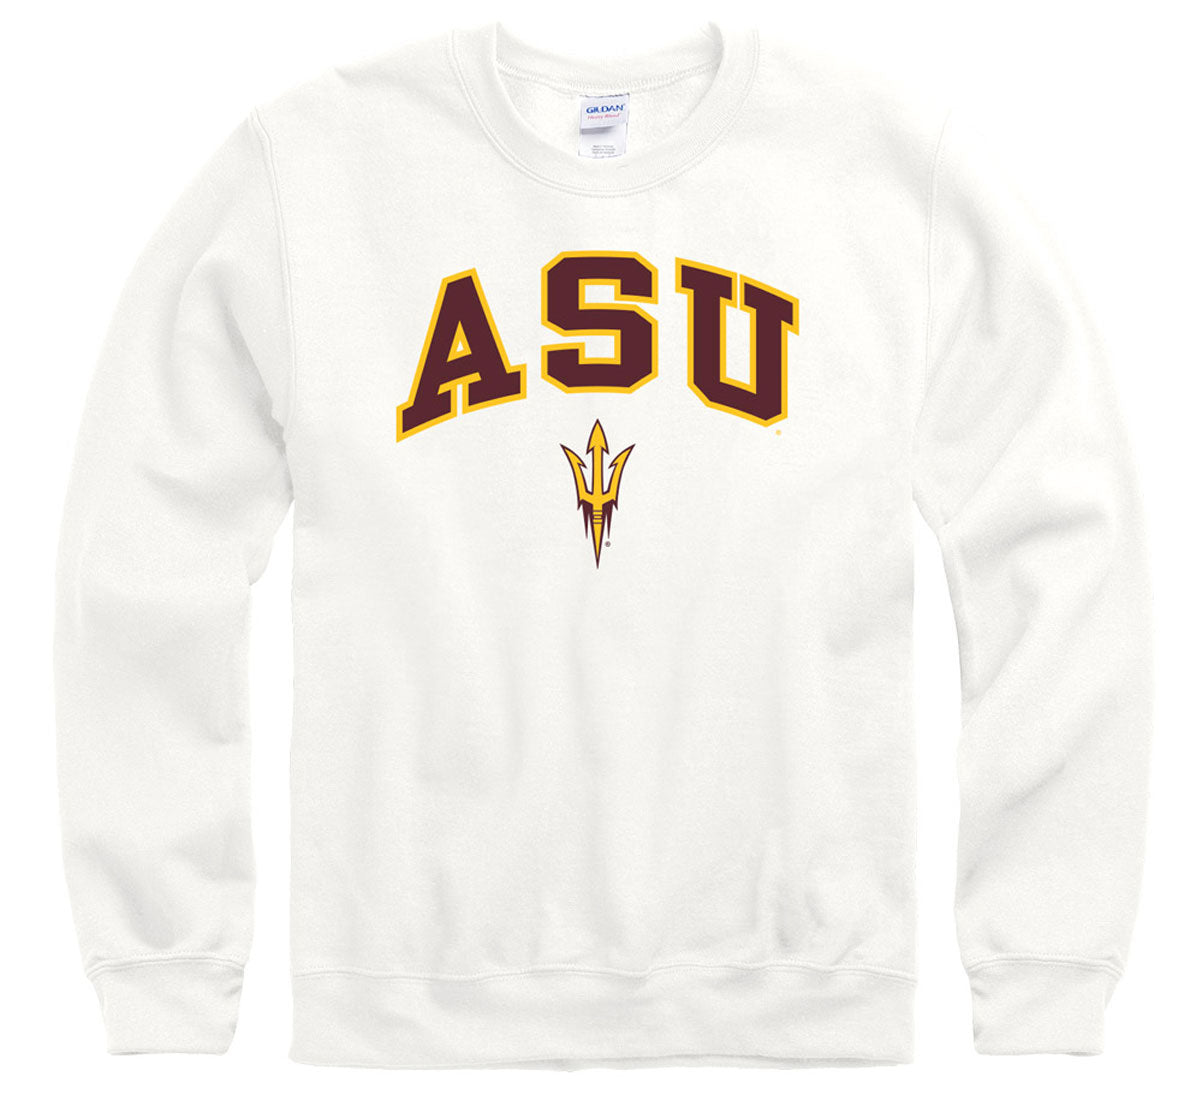 arizona state university jersey